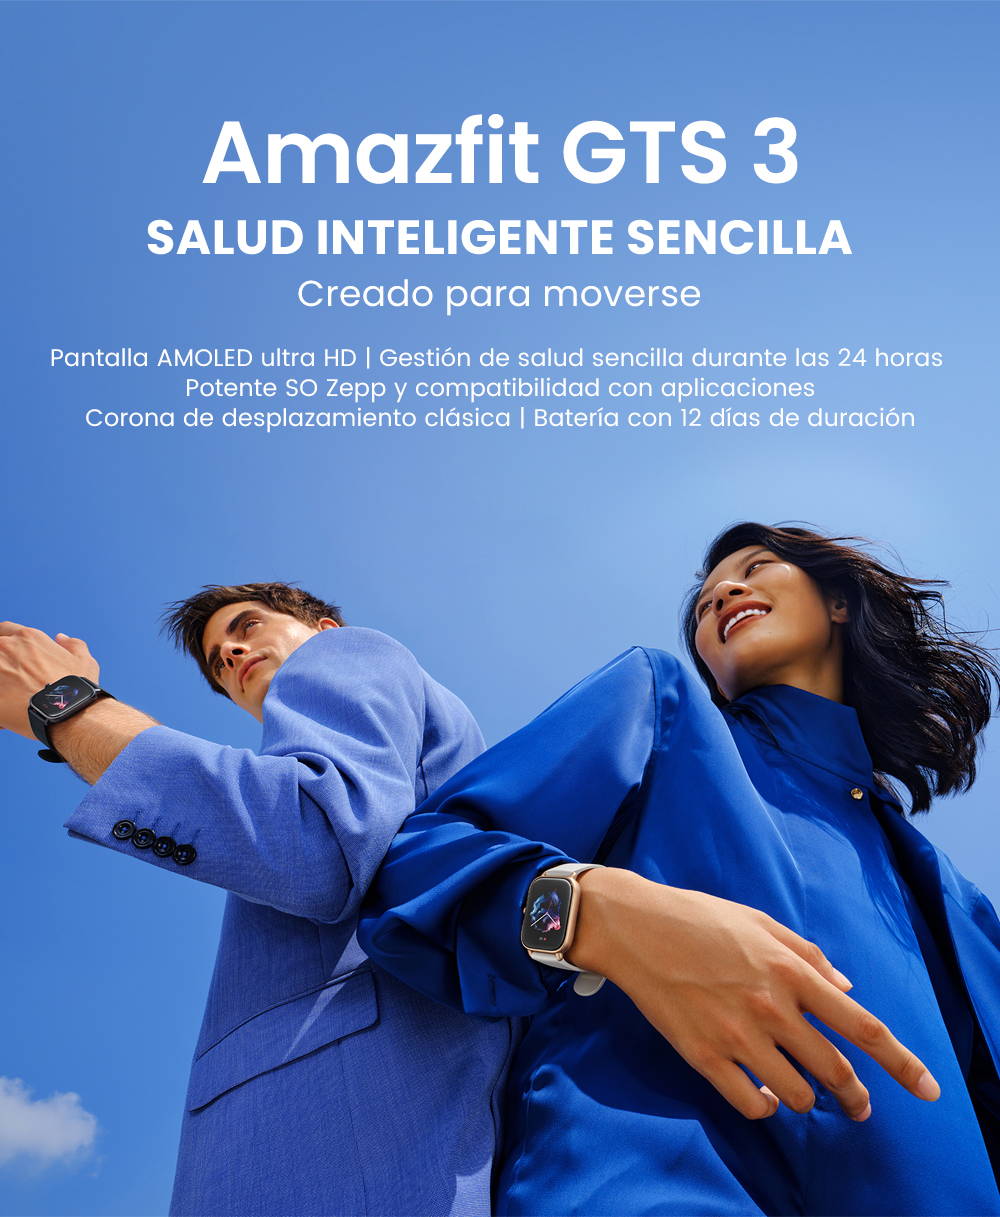 Analizamos el nuevo Amazfit GTS 3: todas las características y novedades